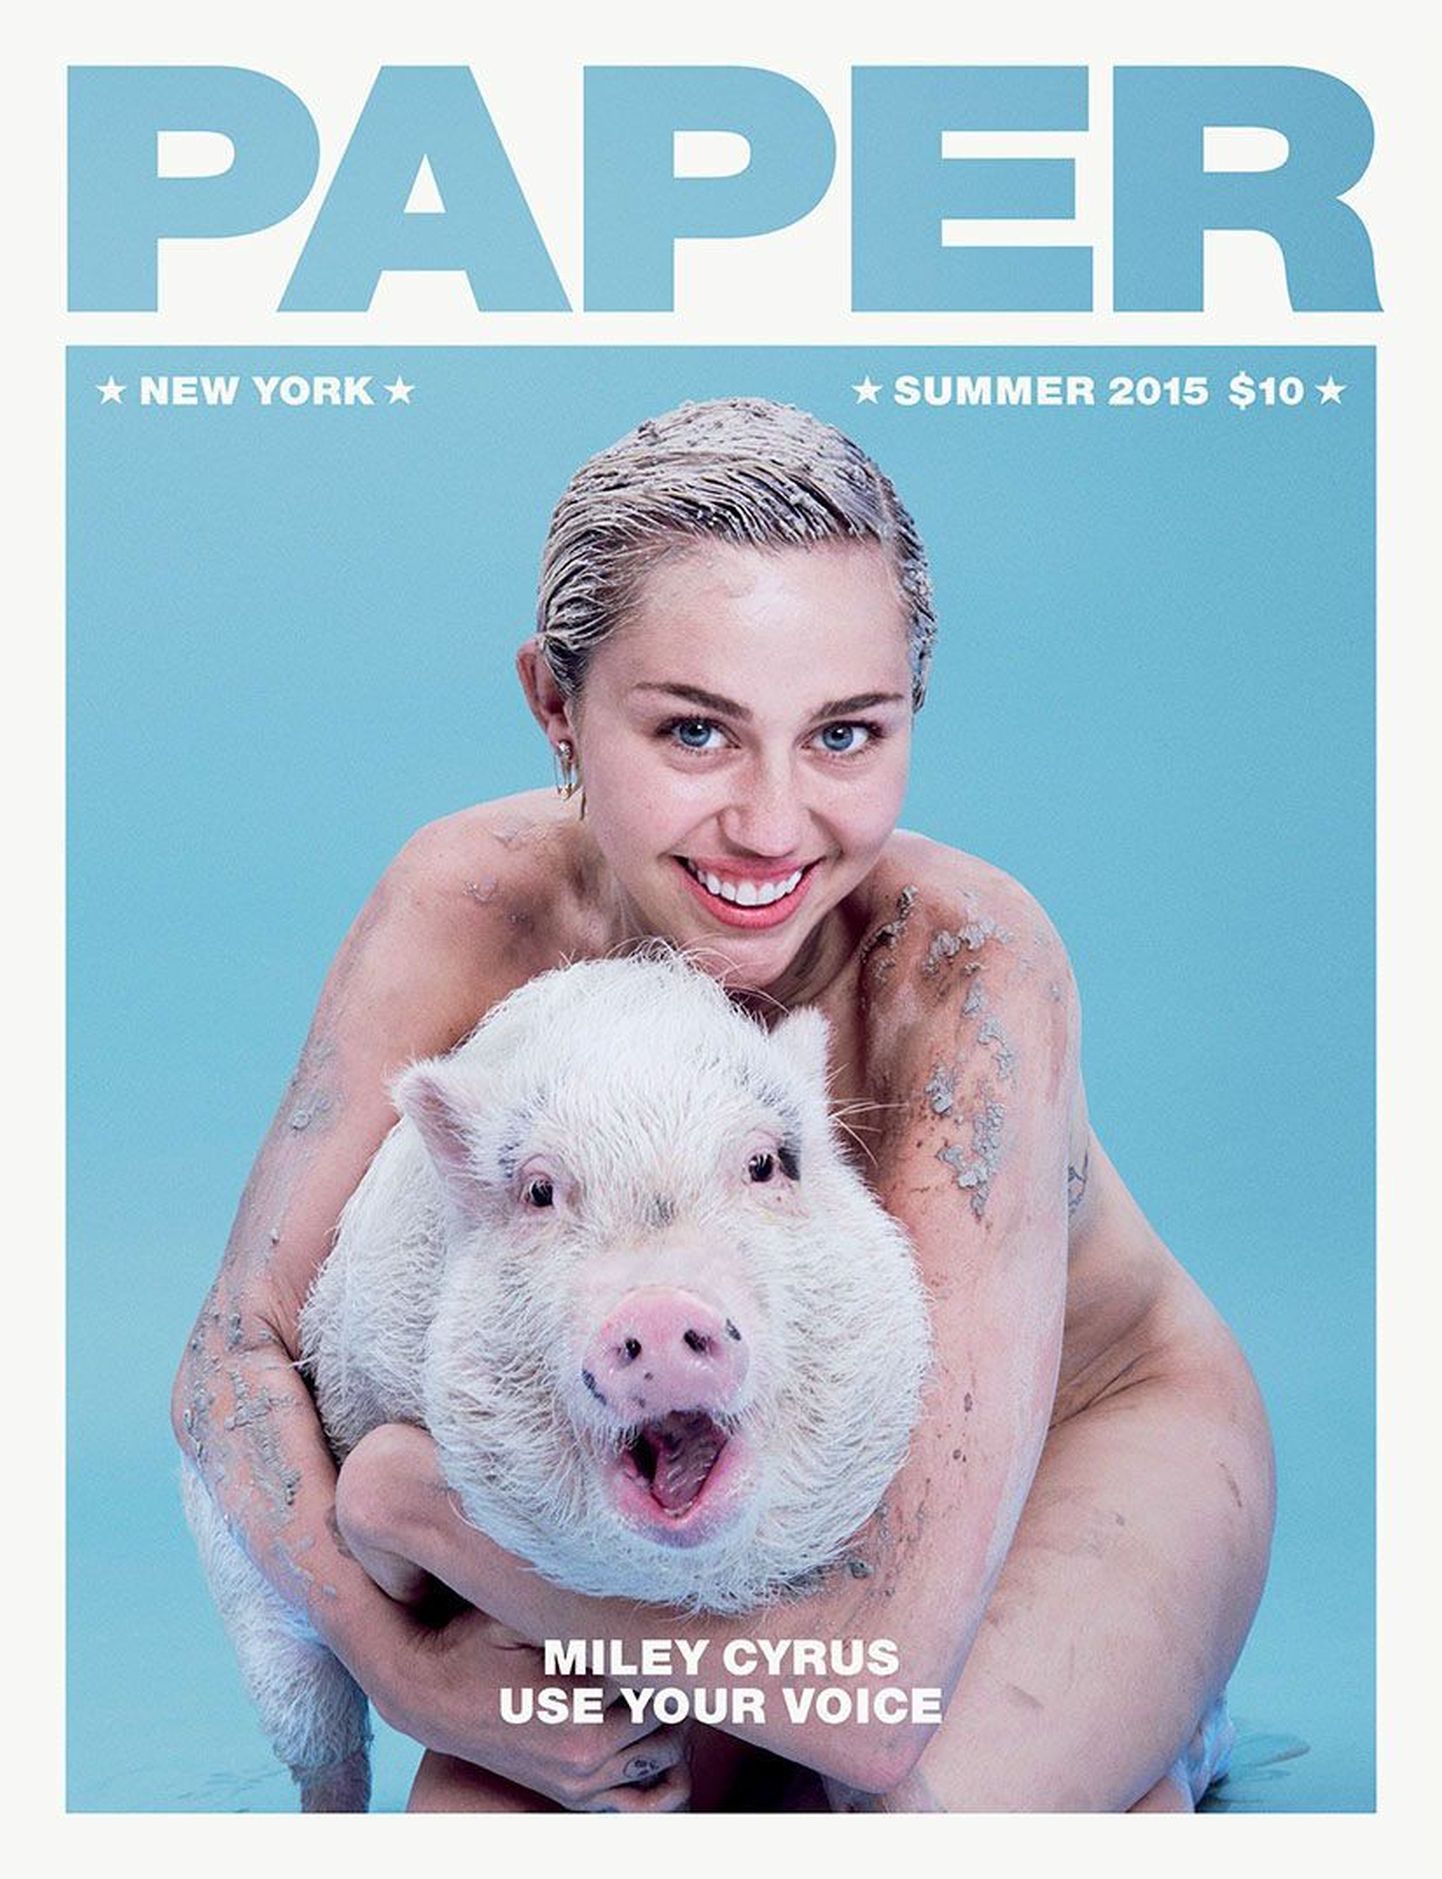 Miley Cyrus ajakirja Paper esikaanel